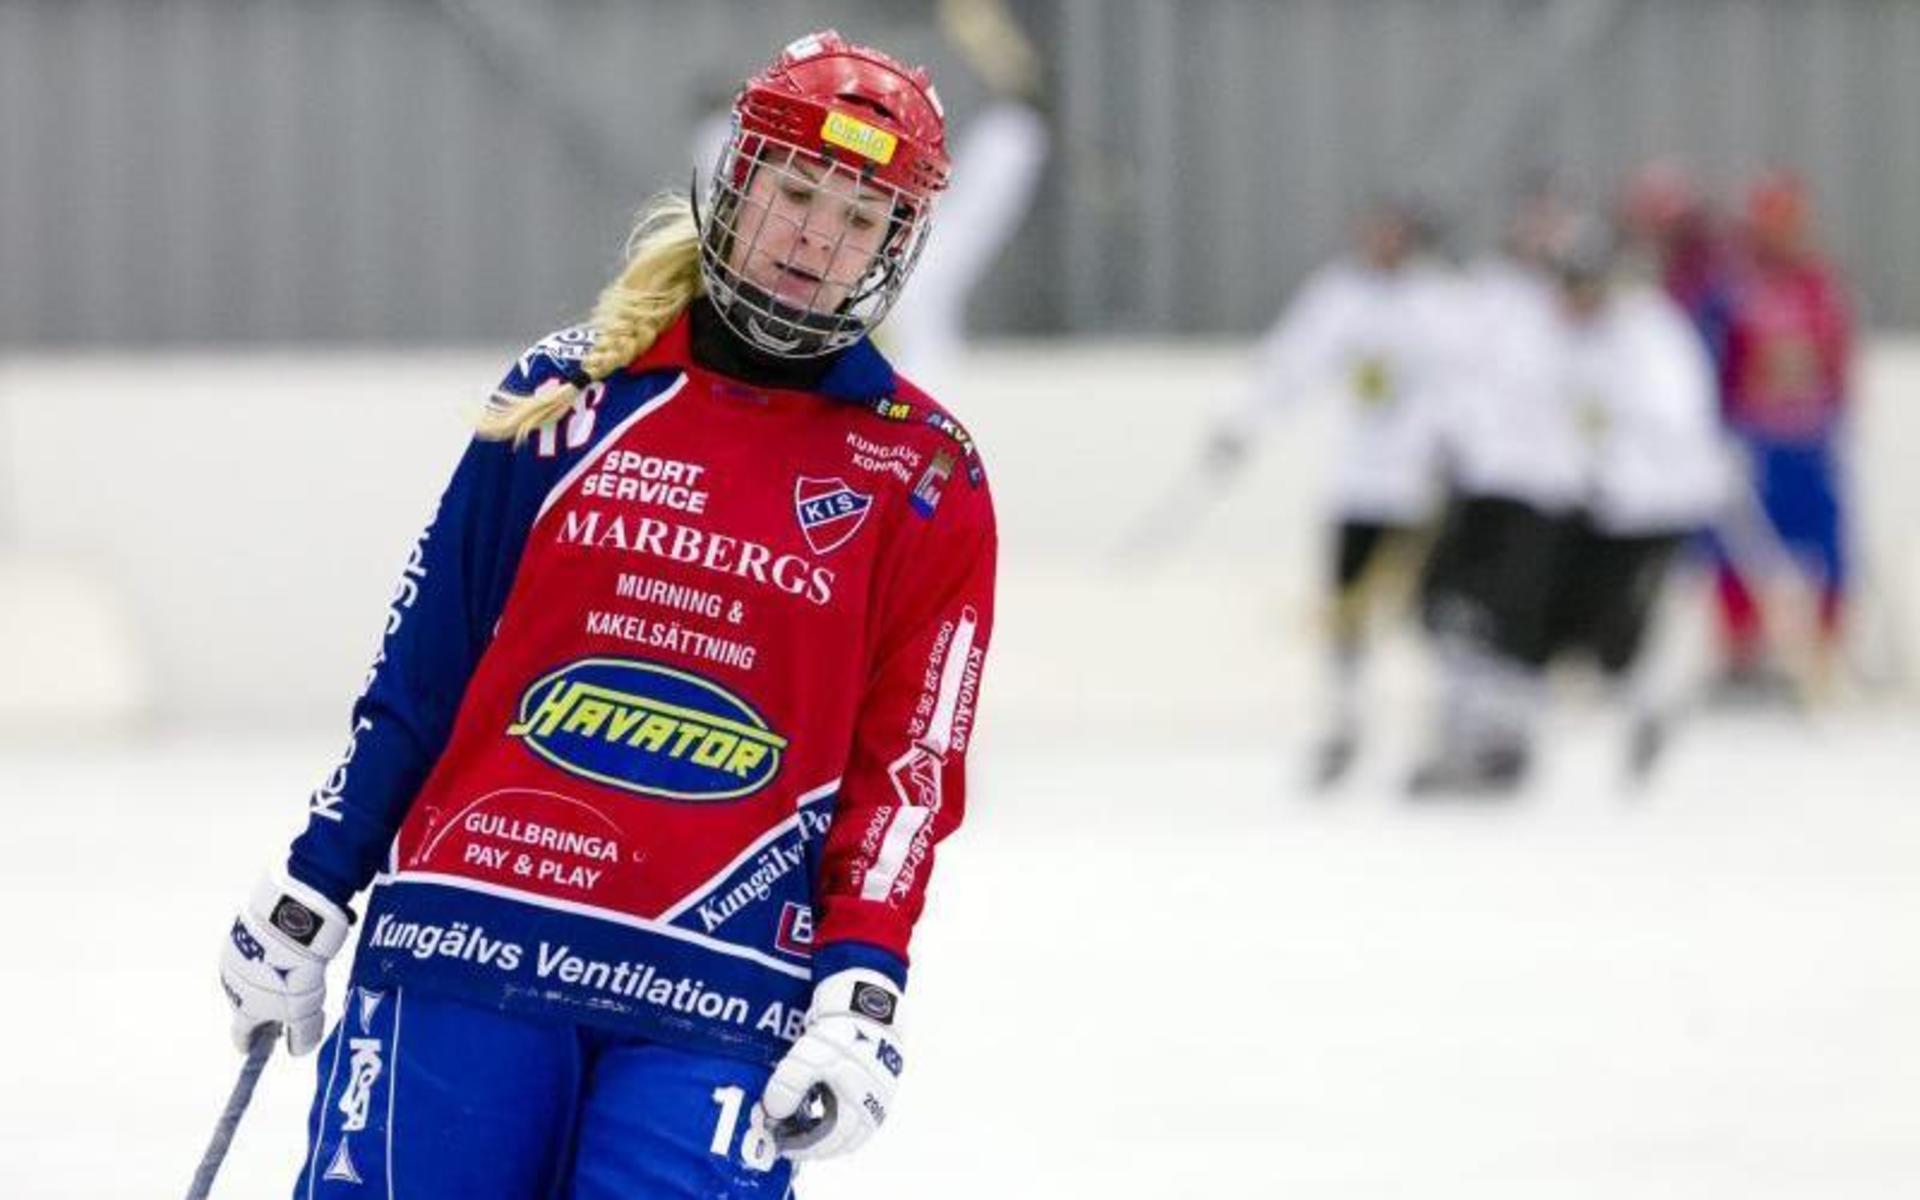 Jesper Stålheims lillasyster Cajza Stålheim spelade bandy med Kareby tidigare. Här ses hon i semifinalen mot AIK 2012.